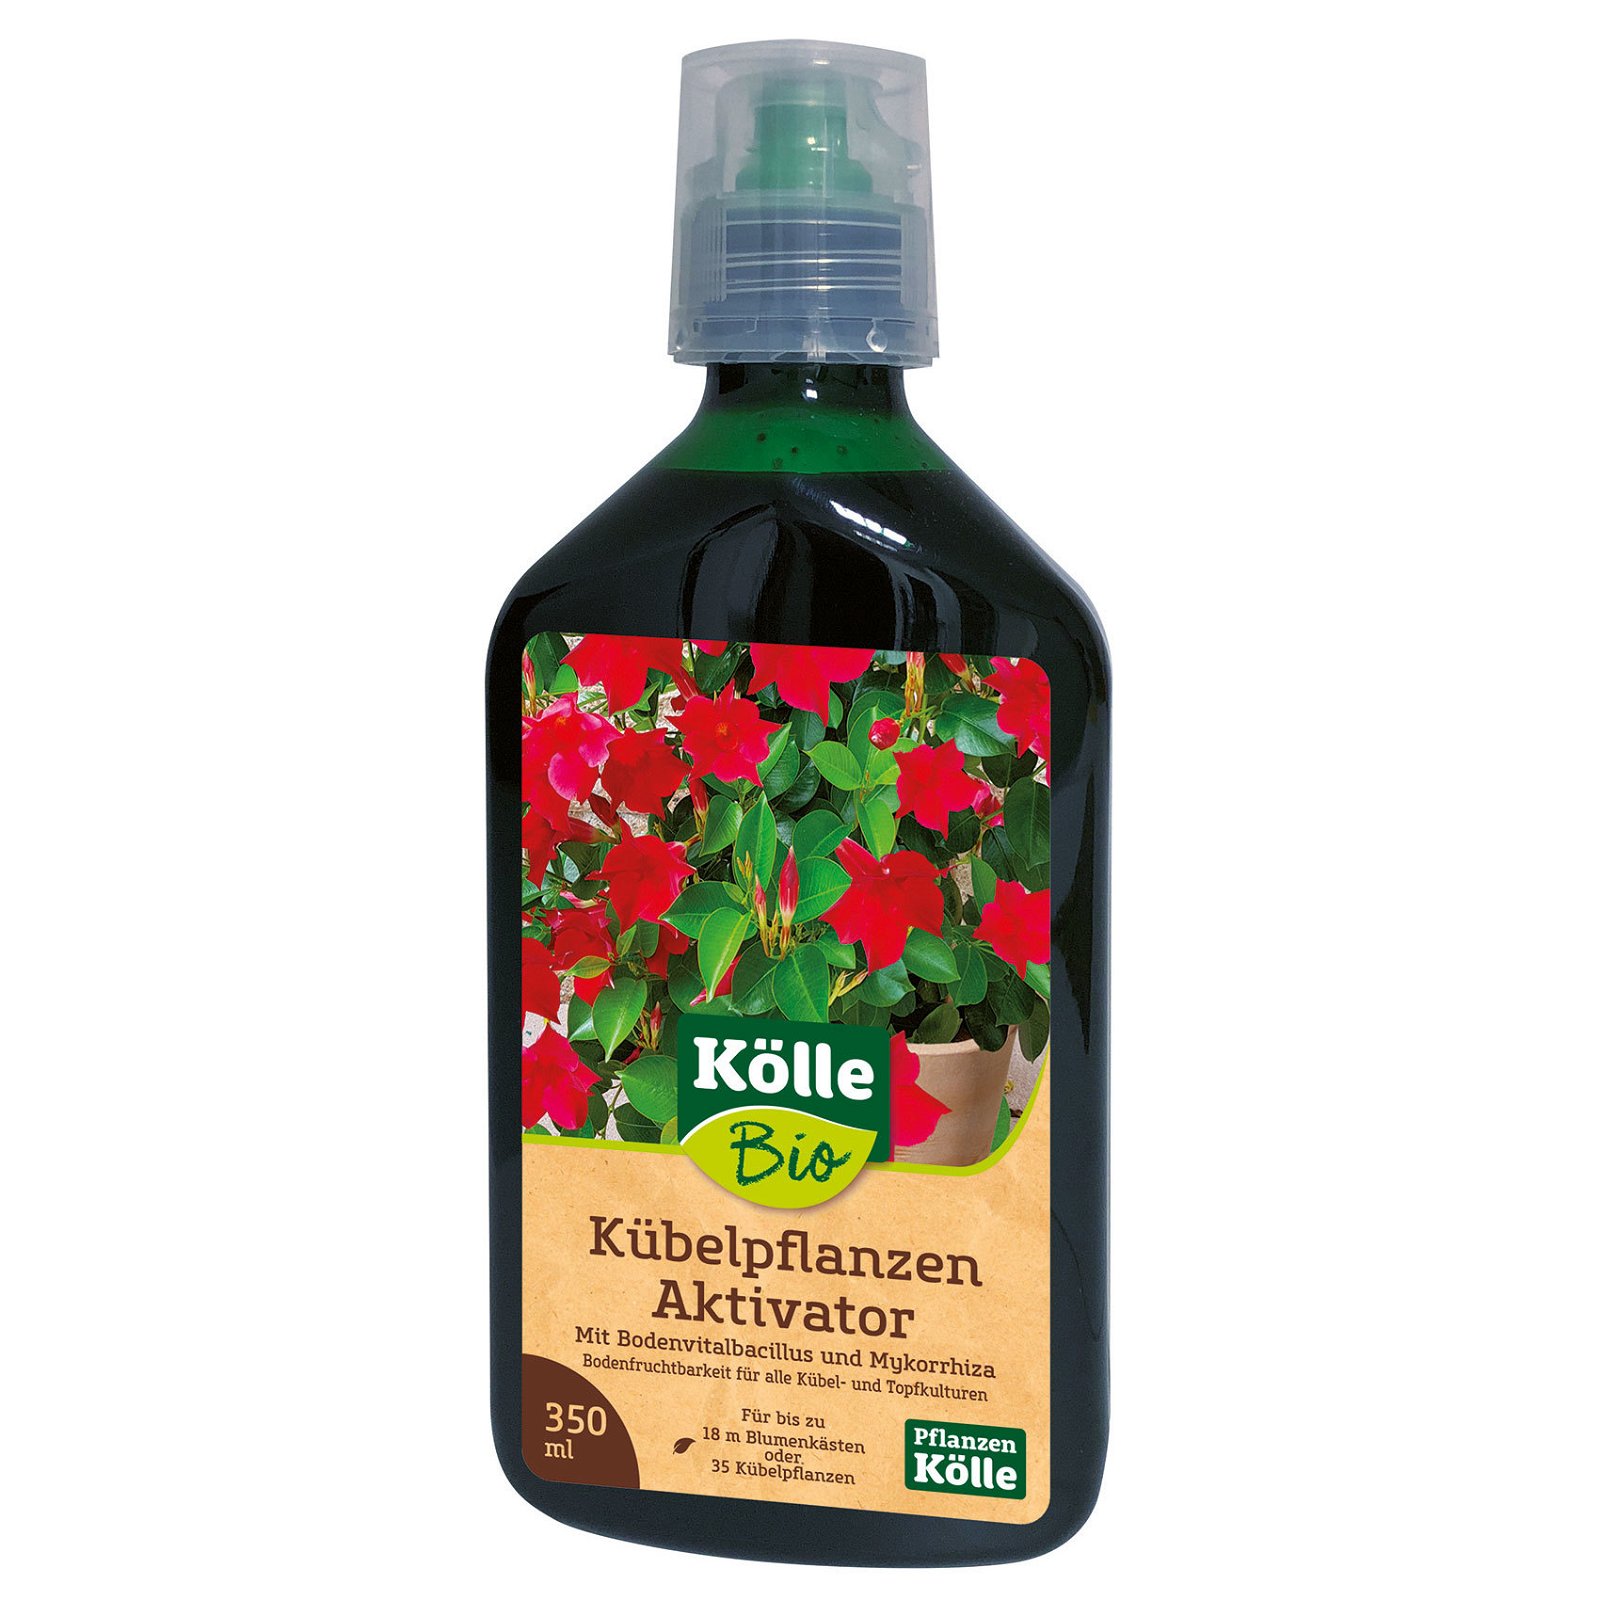 Kölle Bio Kübelpflanzen-Aktivator, Flüssigdünger, 350 ml